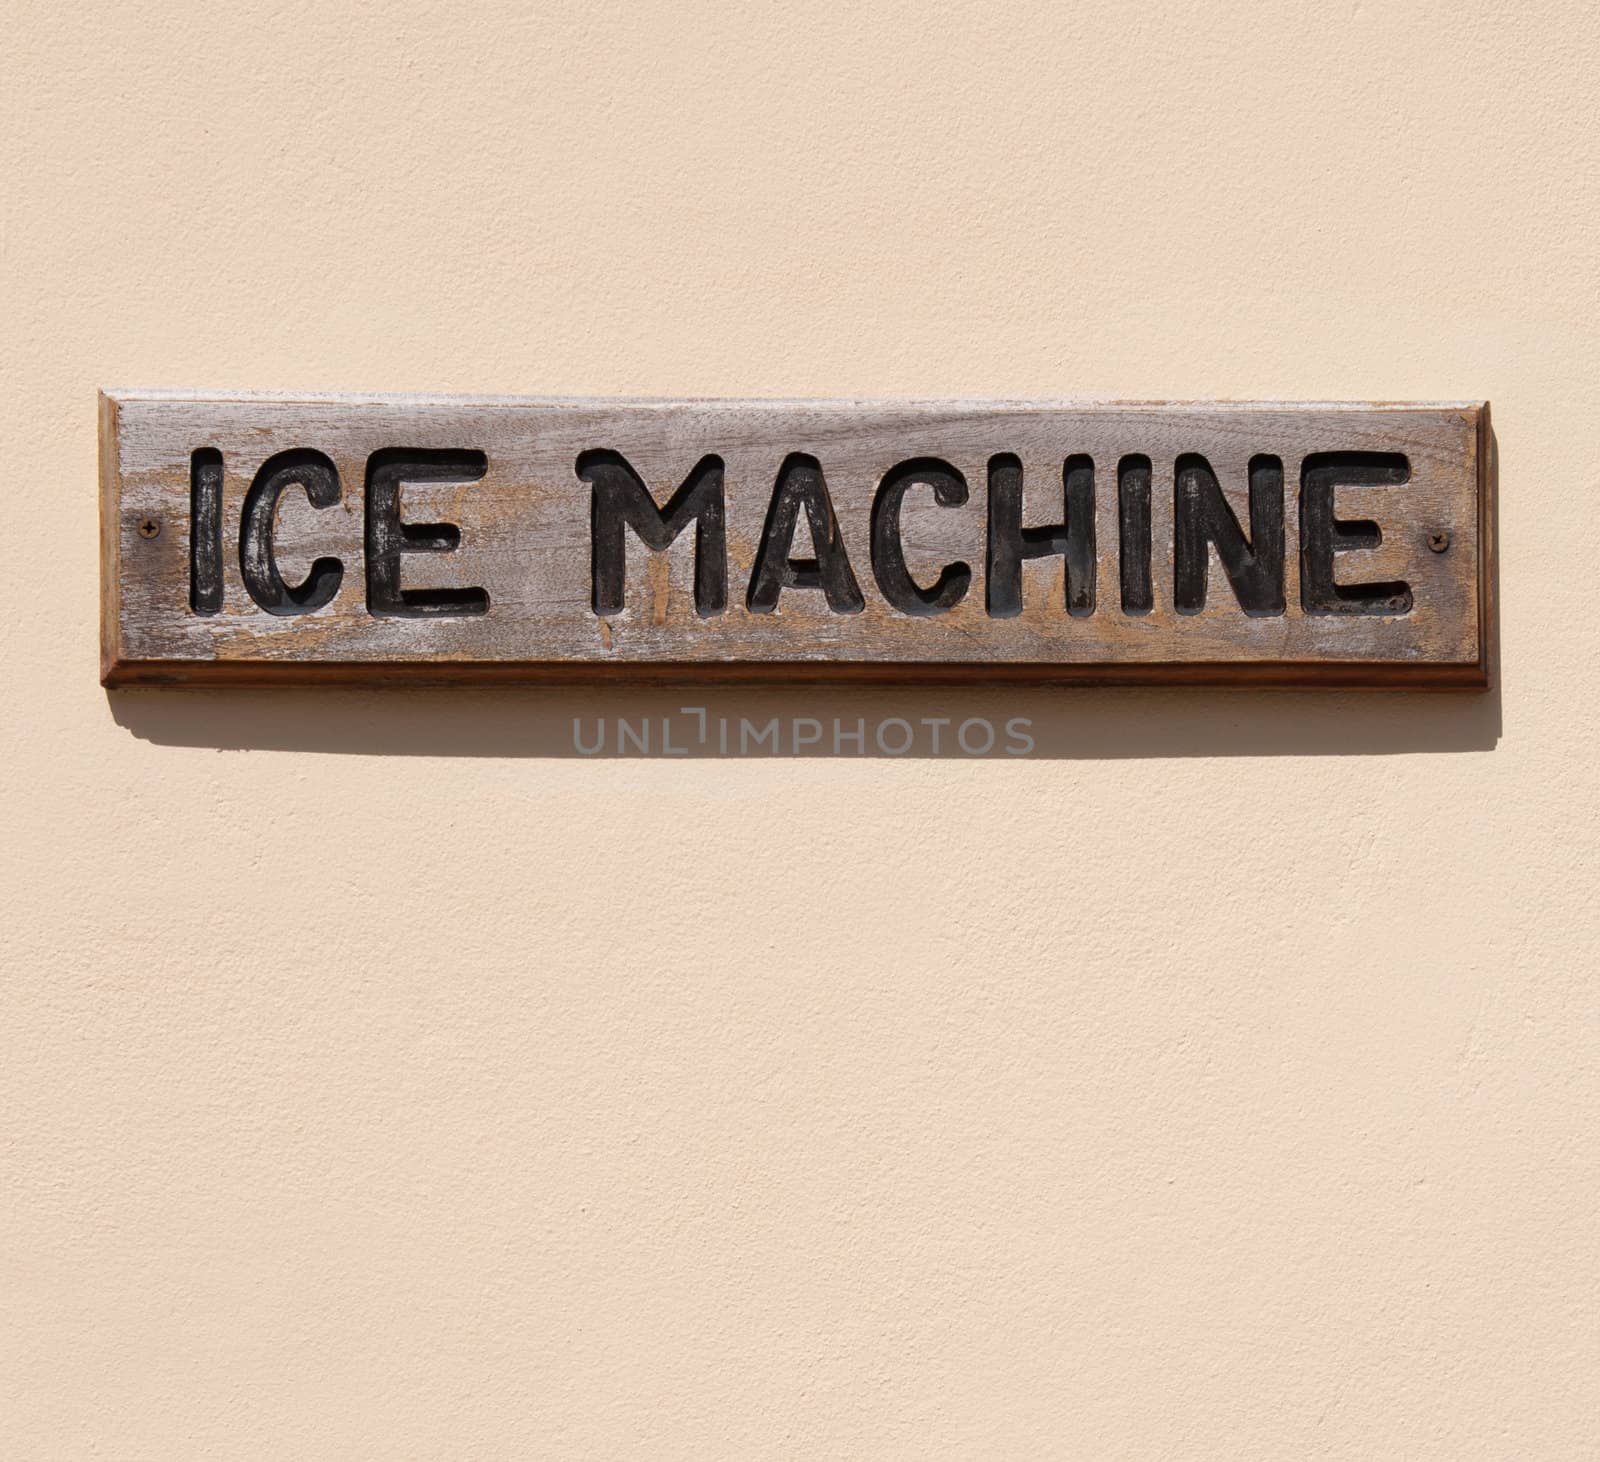 Ice machine by luissantos84